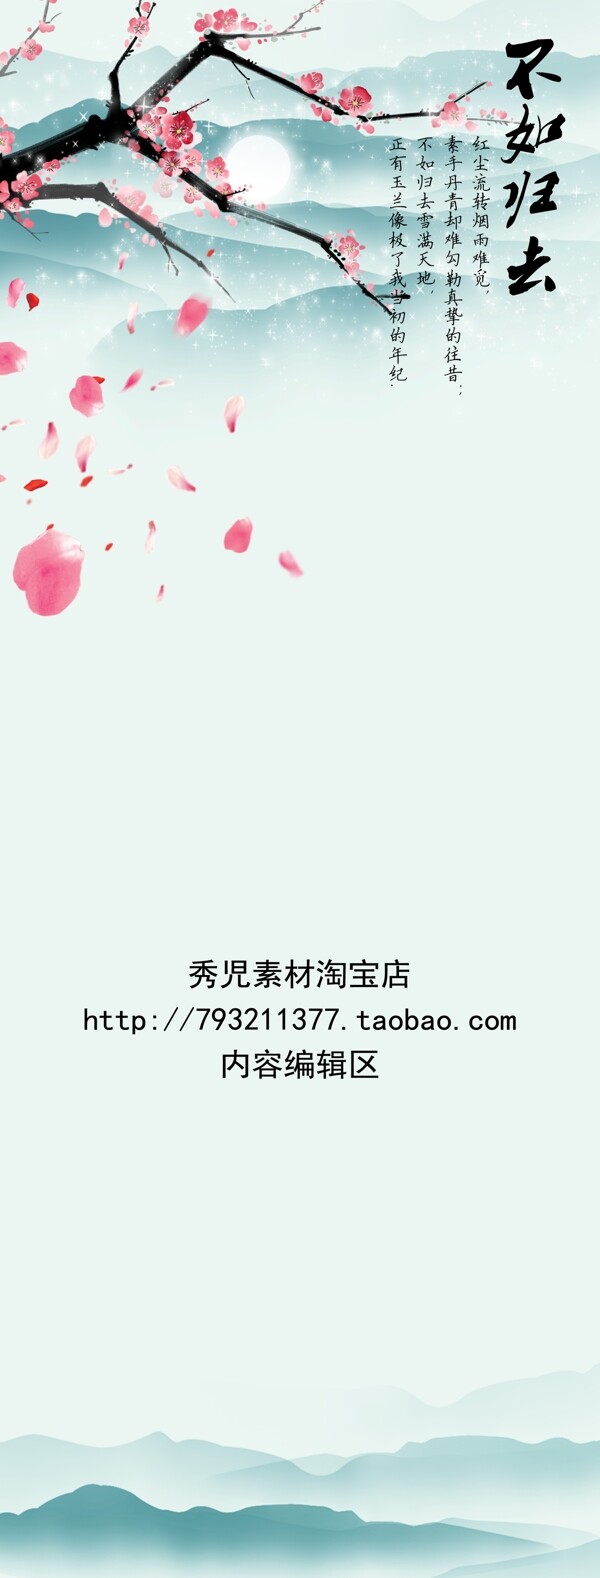 中国风水墨桃花展架设计模板素材海报画面